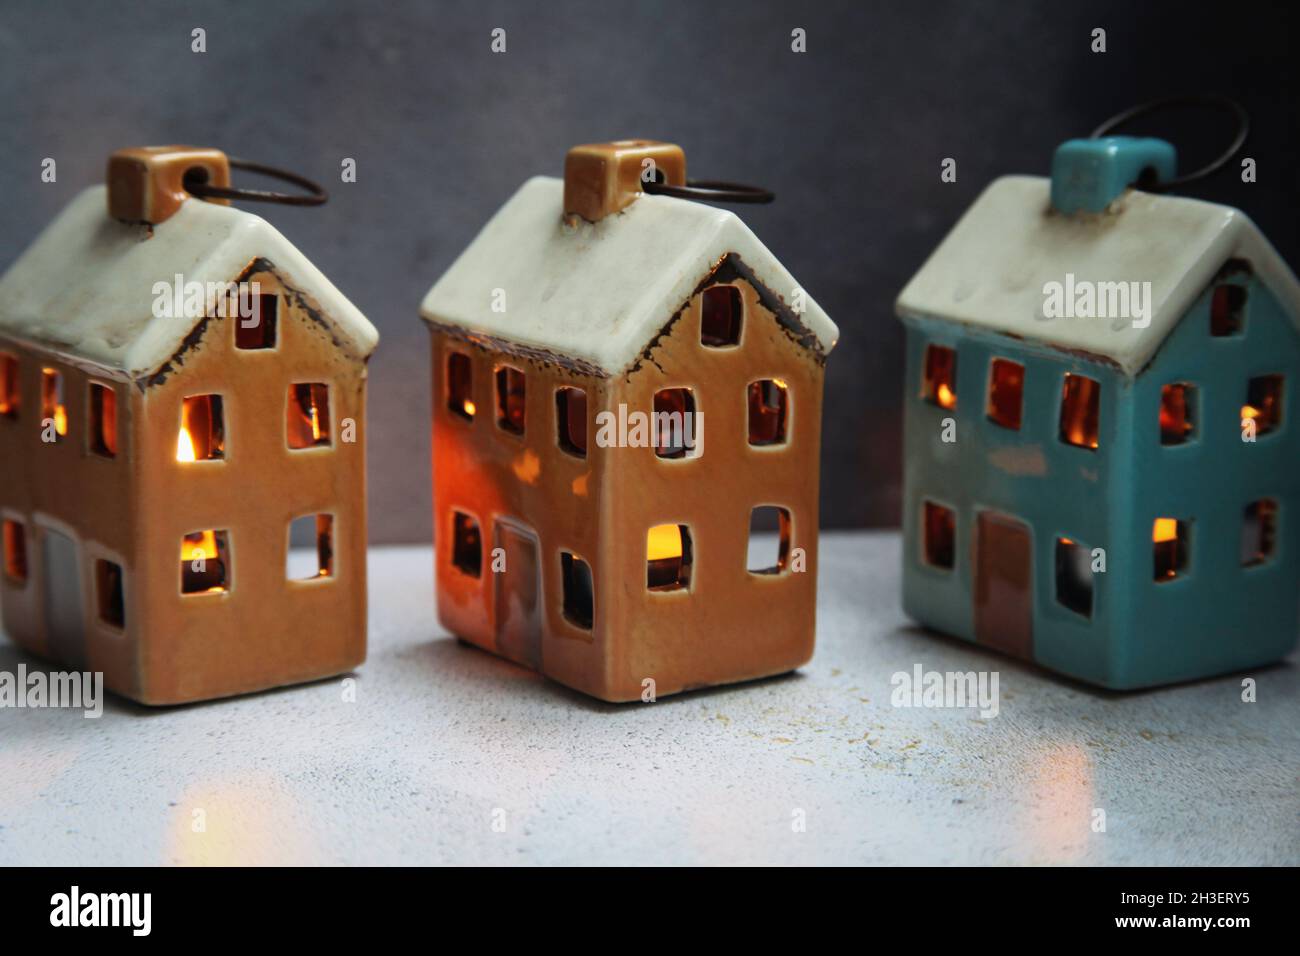 Keramik Weihnachtshaus Kerzenhalter mit brennenden Kerzen dekorieren  Stockfotografie - Alamy